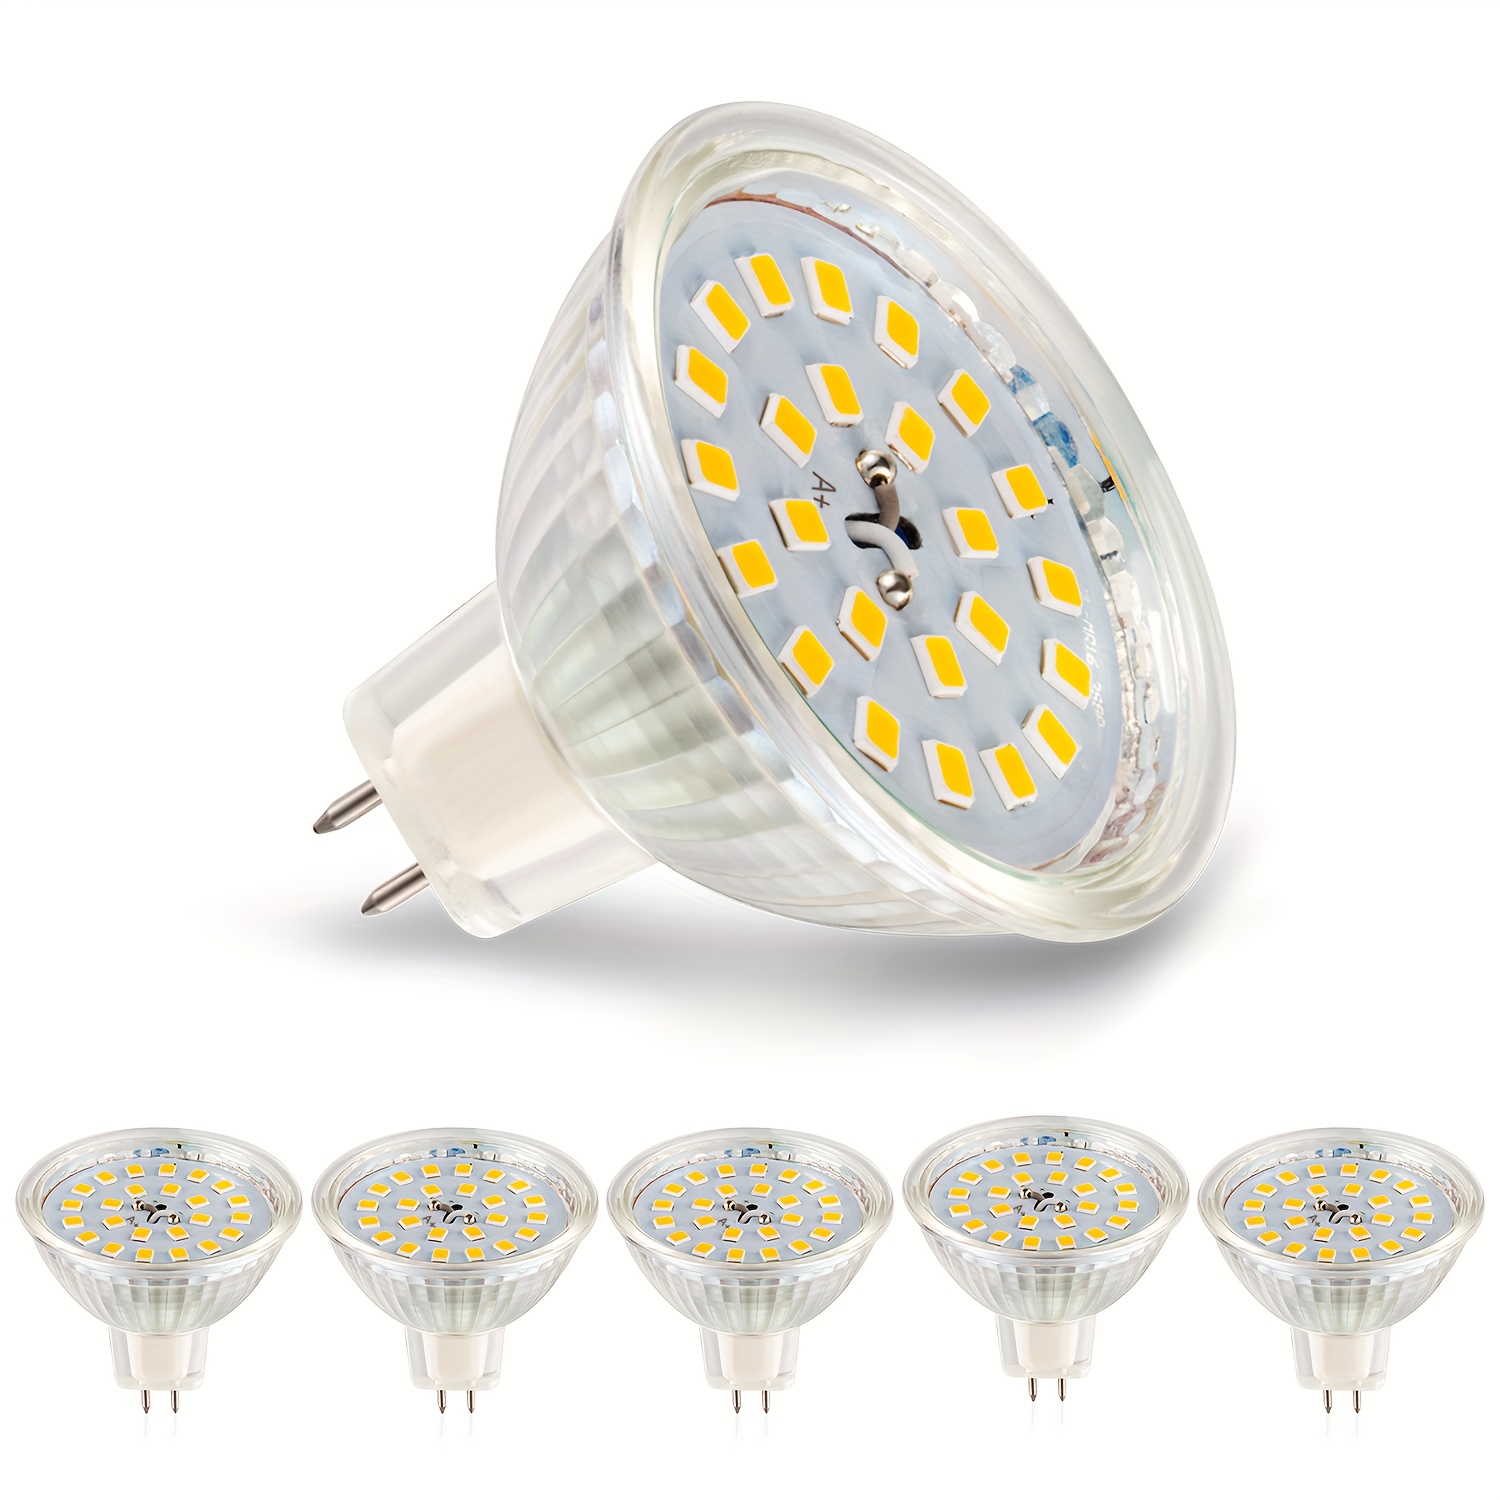 Ampoules Halogènes, Ampoule Spot MR16, Ampoule 12V 50W, Ampoule gu5.3  Ampoule MR16 Dimmable, Ampoules Halogène